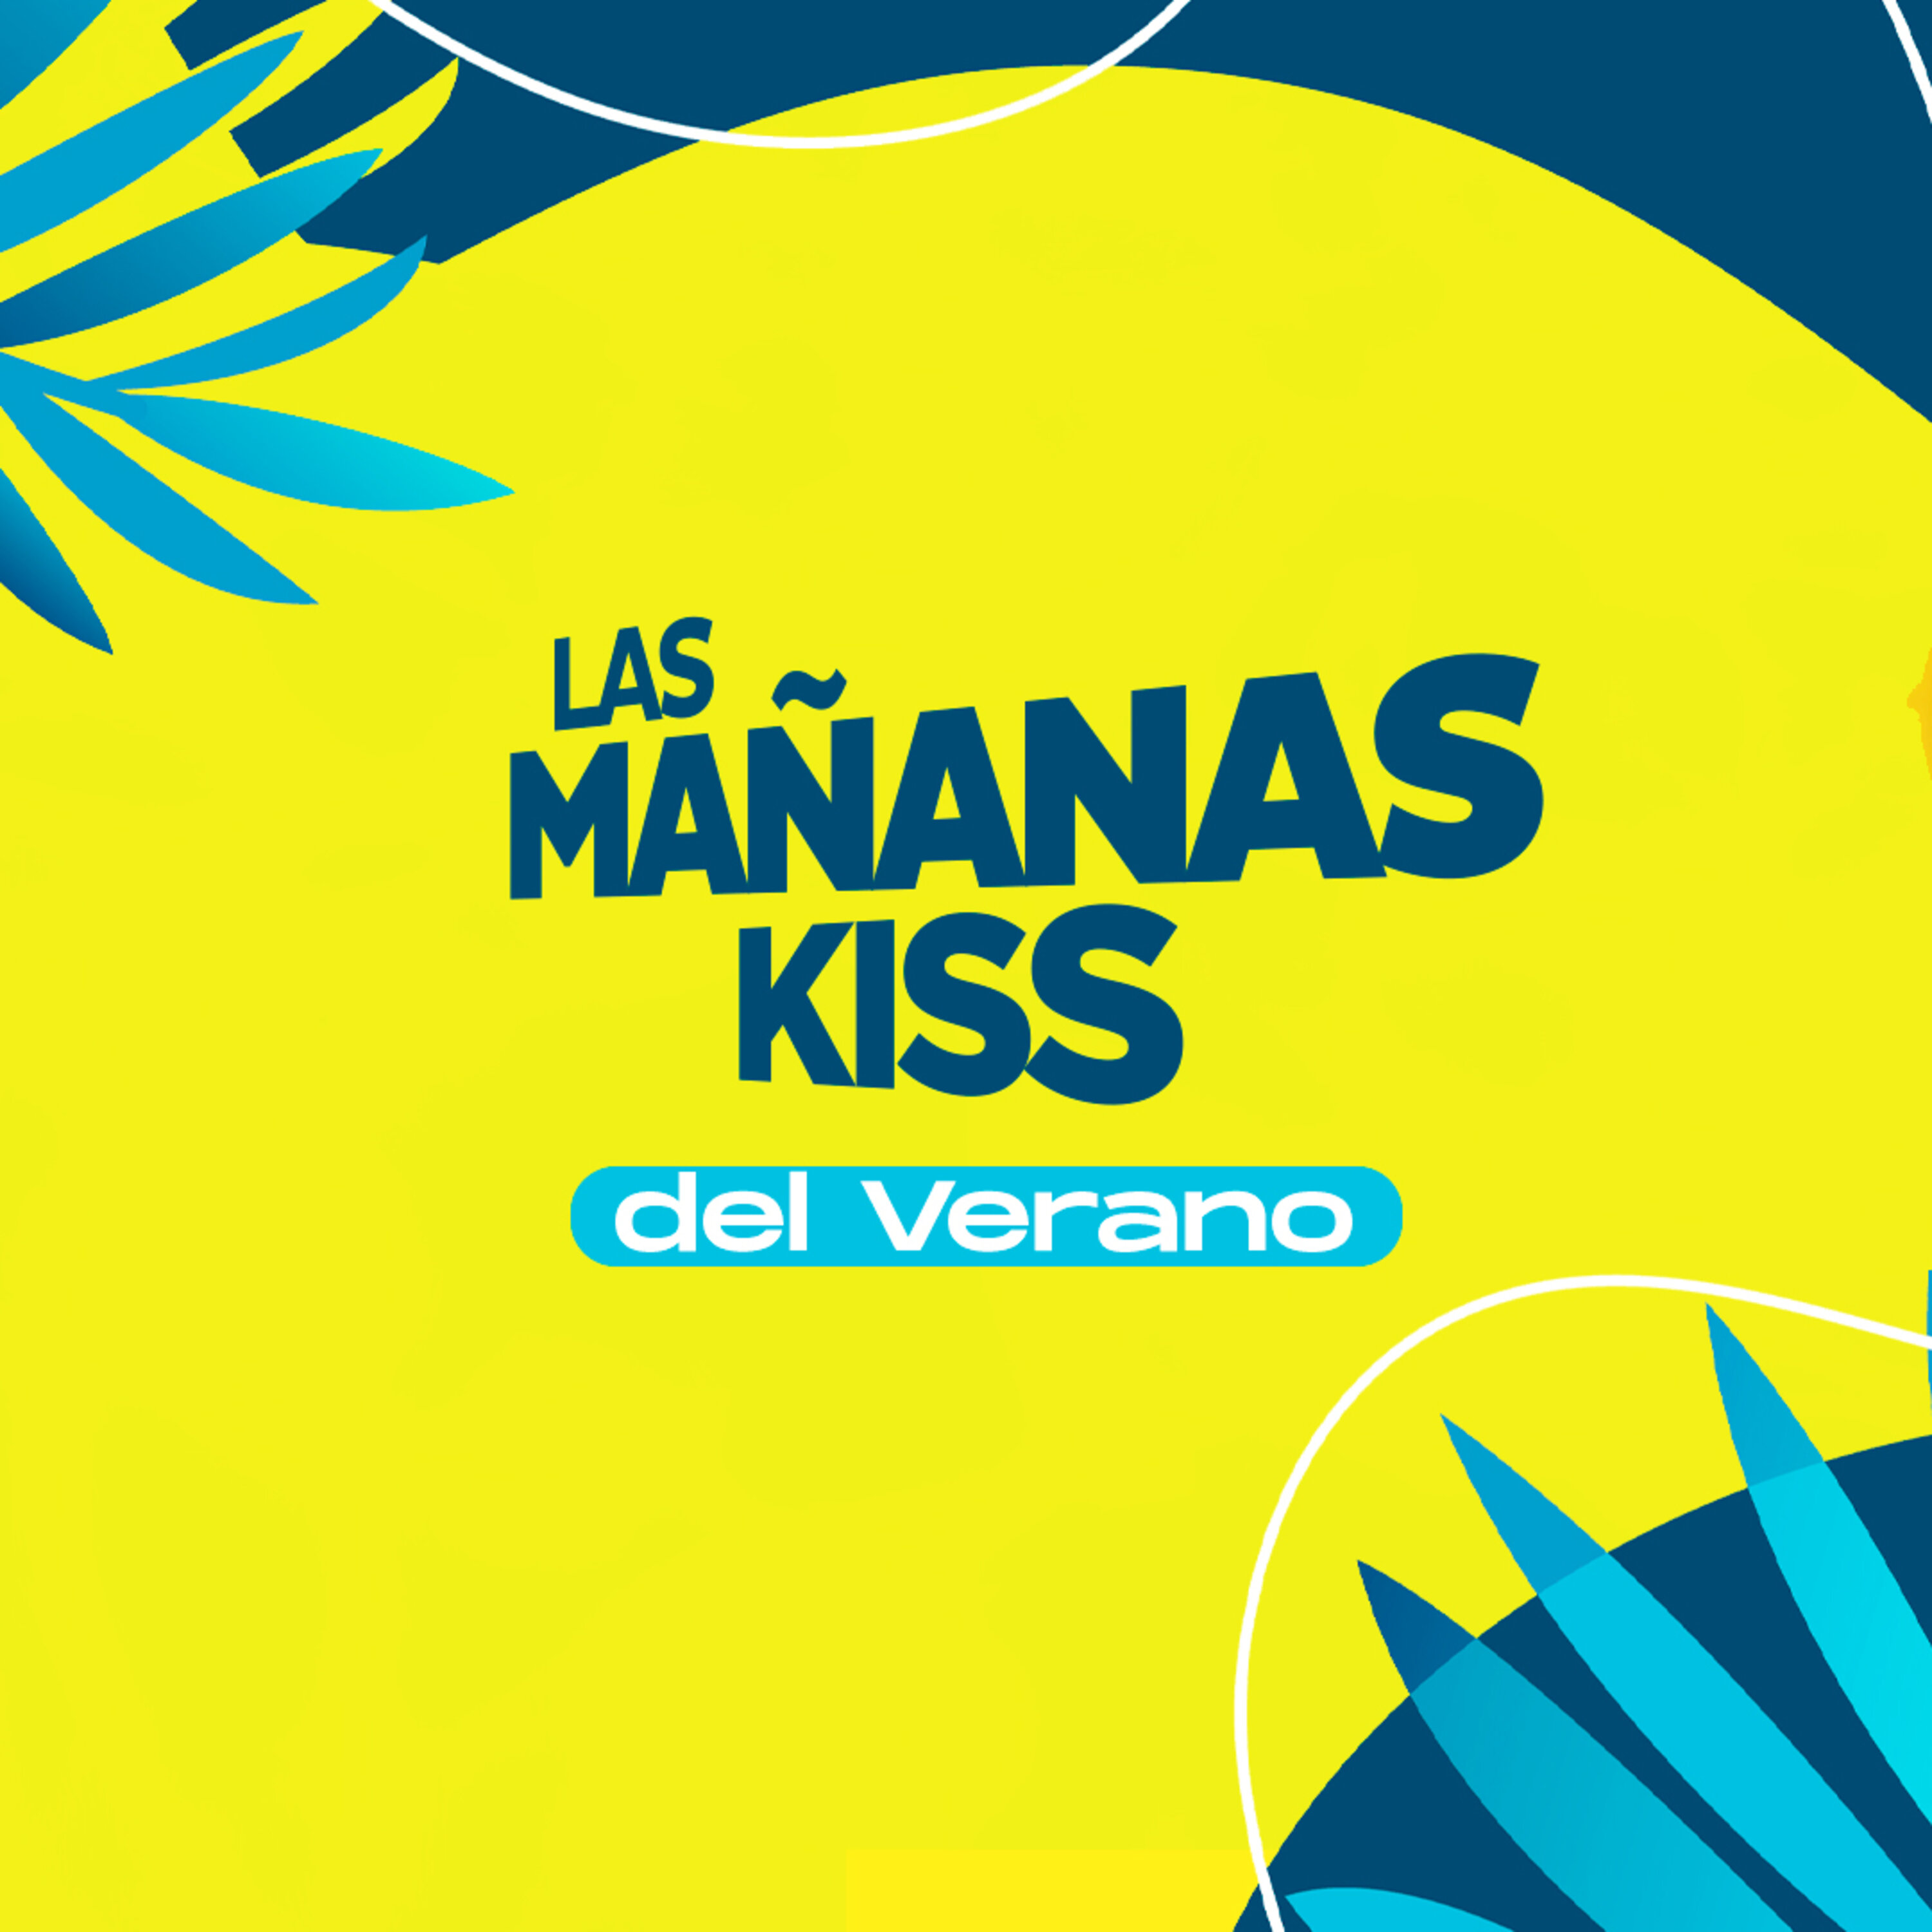 Las Mañanas KISS del Verano (09/08/2022 - 08-09h)